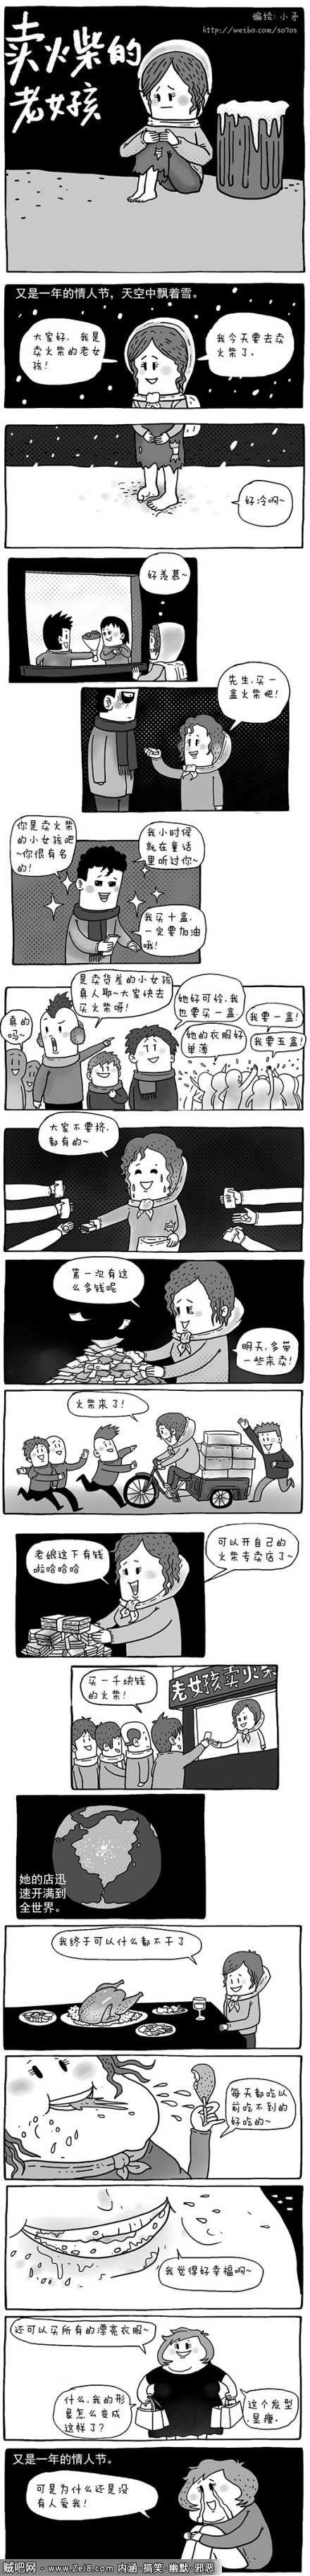 【小矛邪恶漫画系列】卖火柴的女孩邪恶版